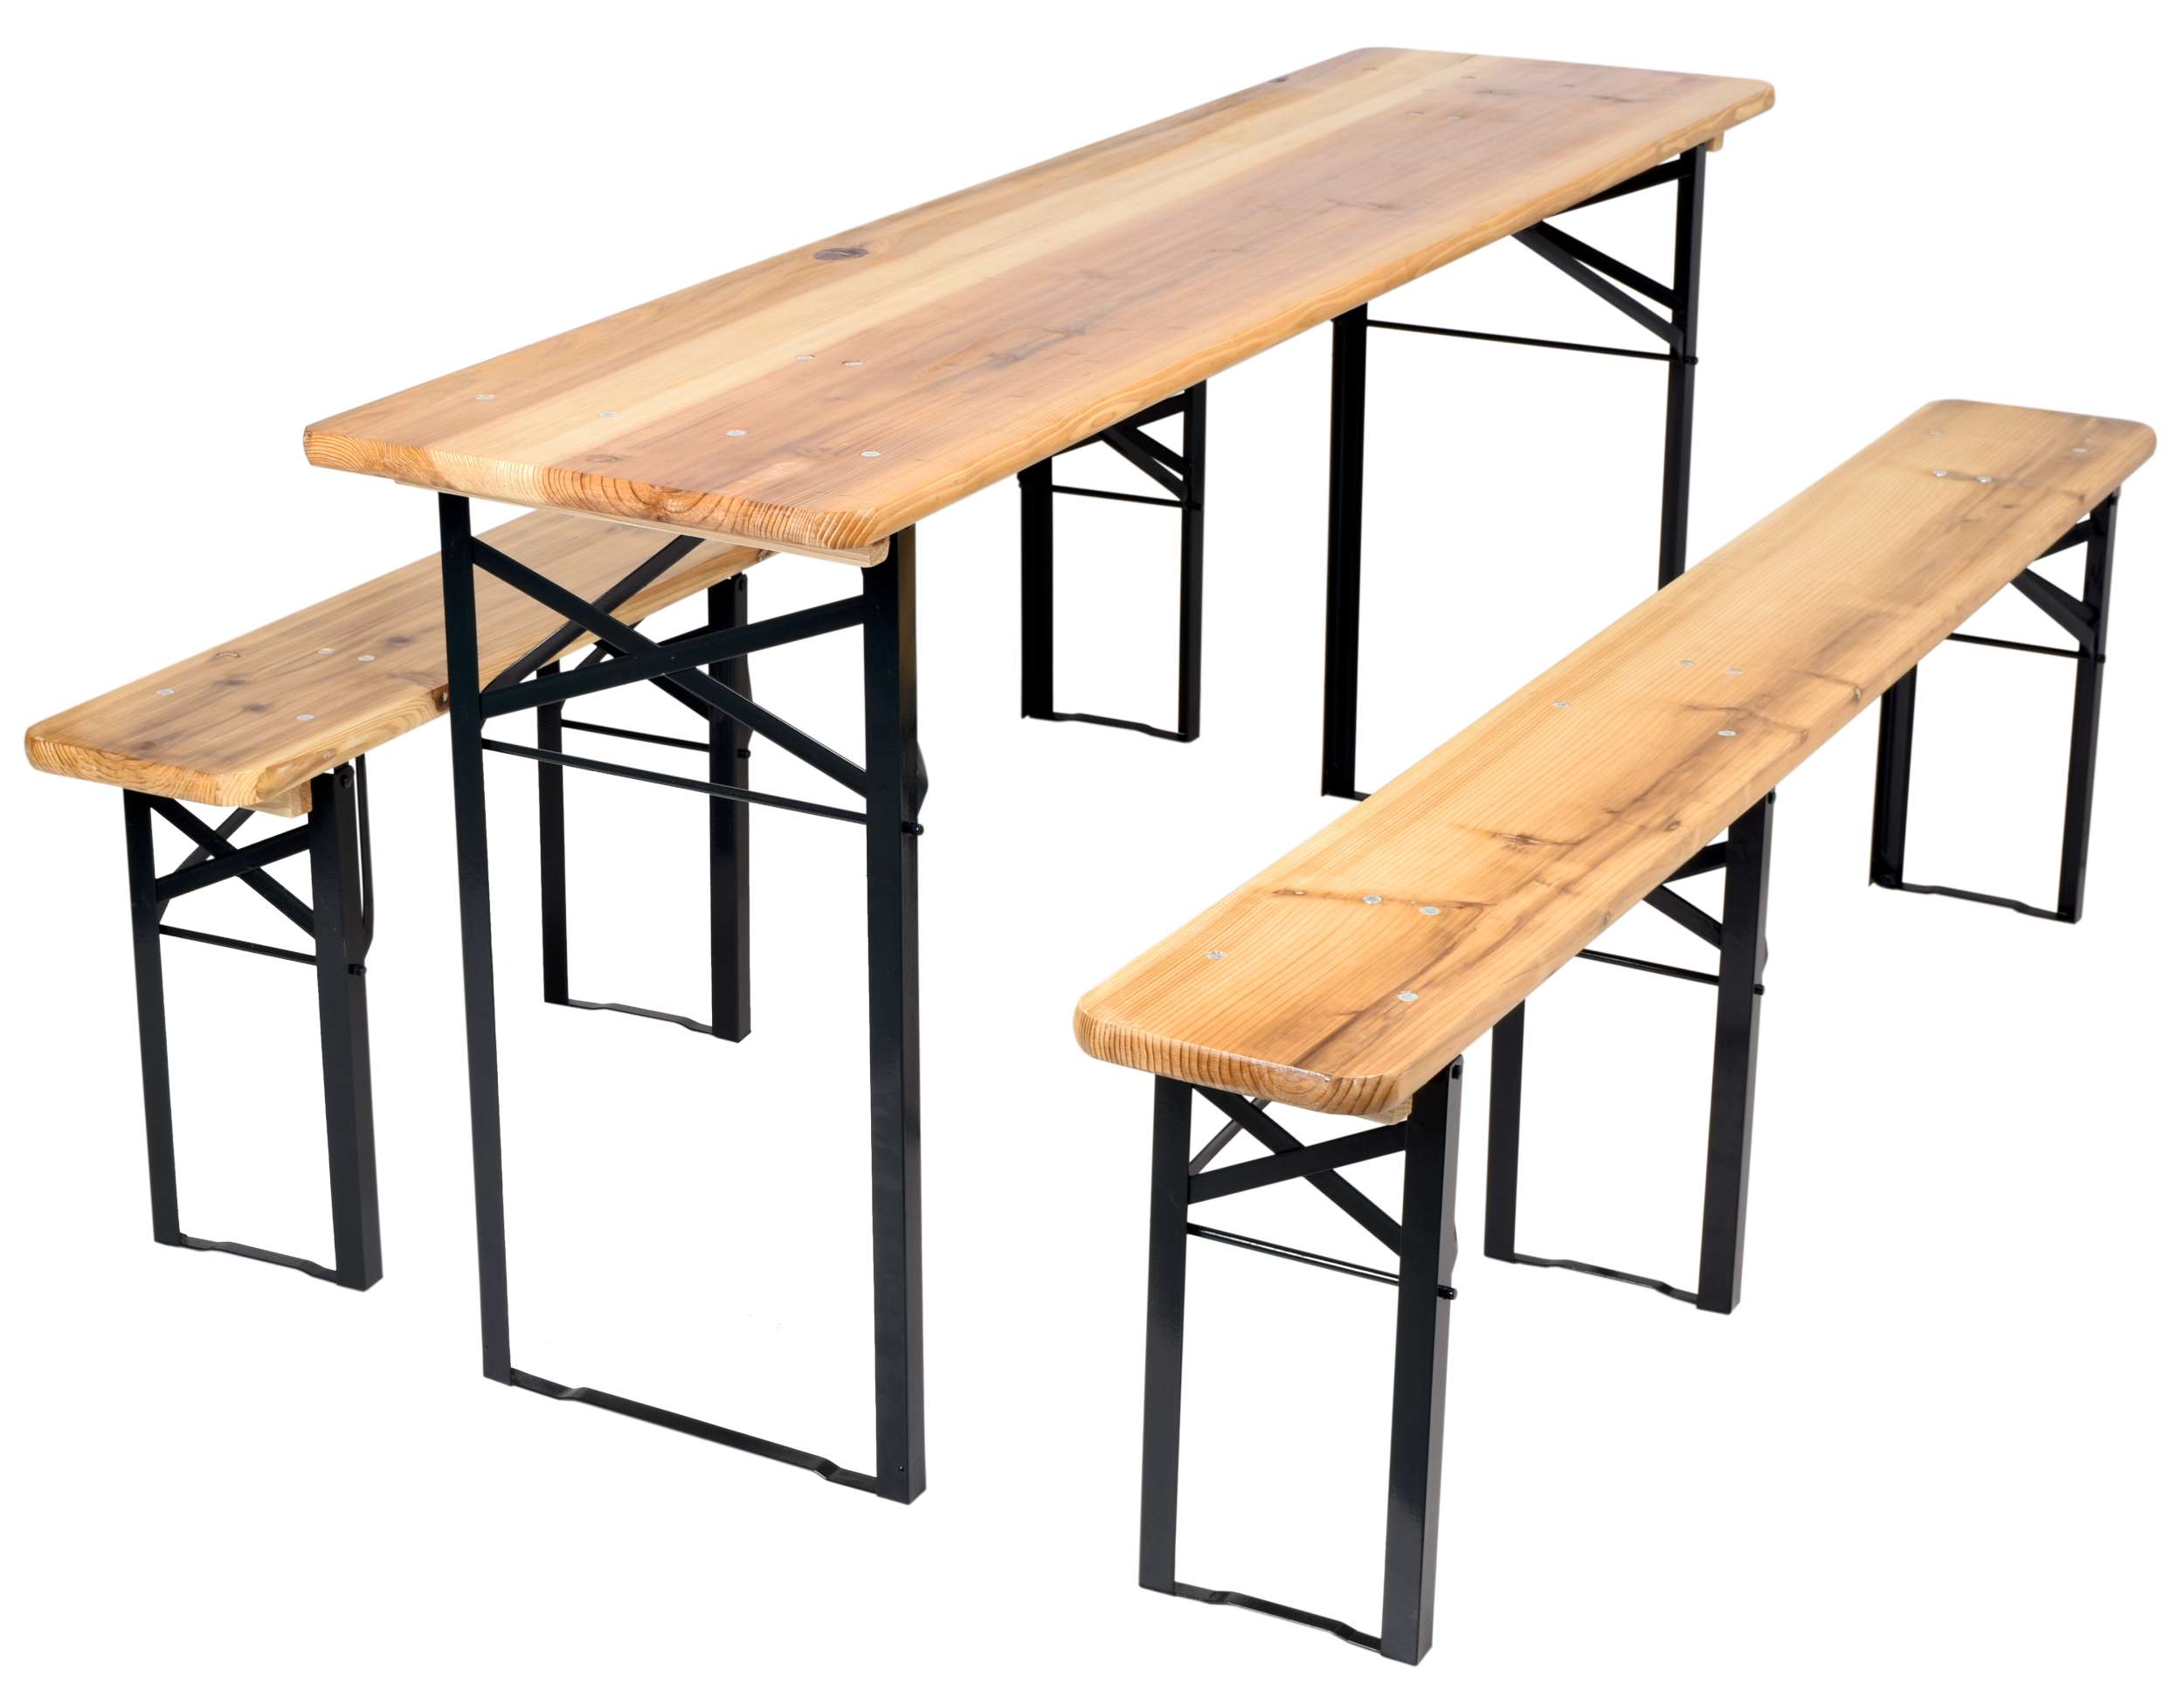 Zestaw piwny - stół + dwie ławki 170 cm